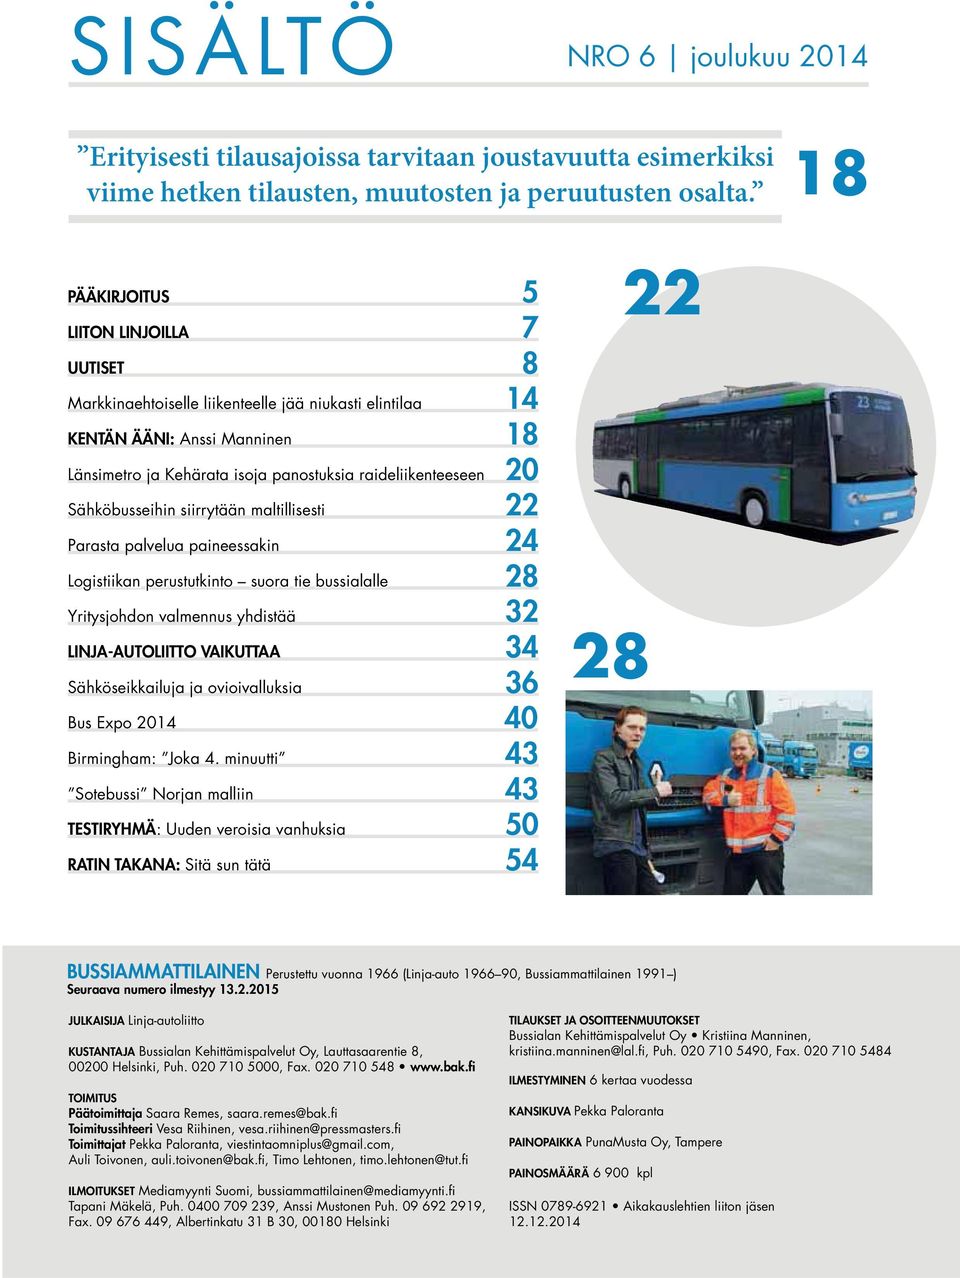 Sähköbusseihin siirrytään maltillisesti 22 Parasta palvelua paineessakin 24 Logistiikan perustutkinto suora tie bussialalle 28 Yritysjohdon valmennus yhdistää 32 LINJA-AUTOLIITTO VAIKUTTAA 34